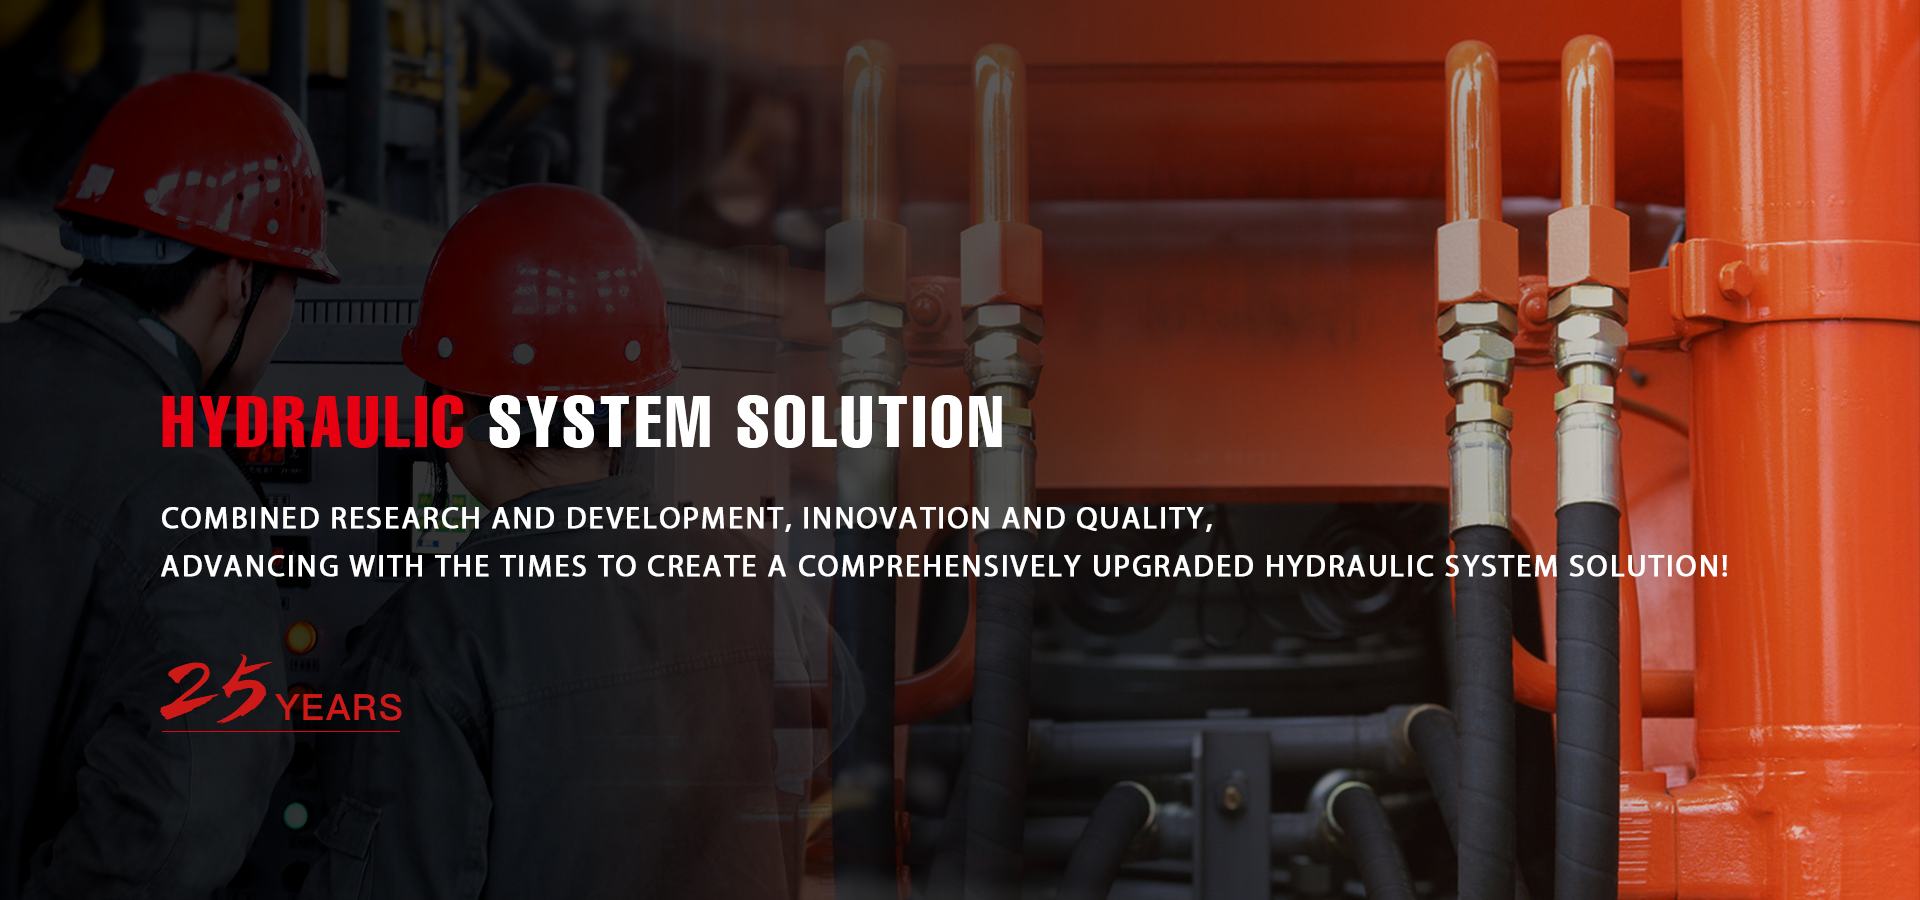 Hydraulic system solution